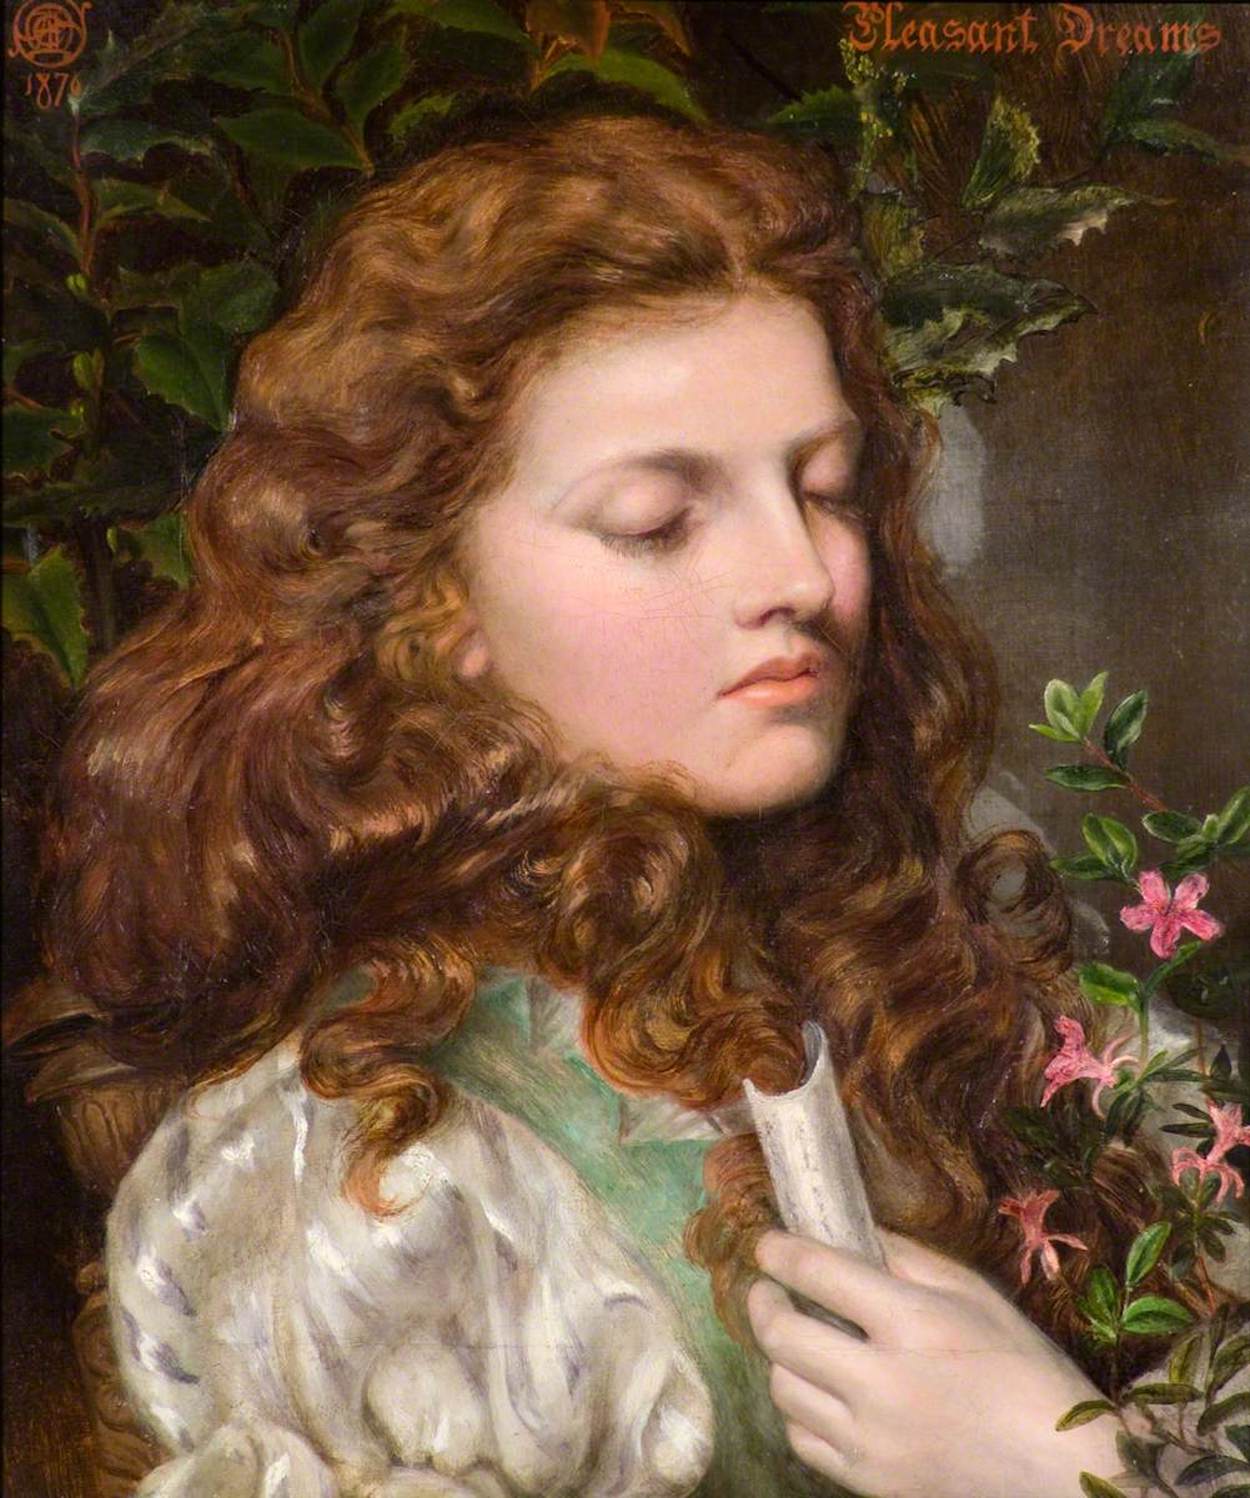 Przyjemne sny by Emma Sandys - 1876 - 44 x 32 cm 